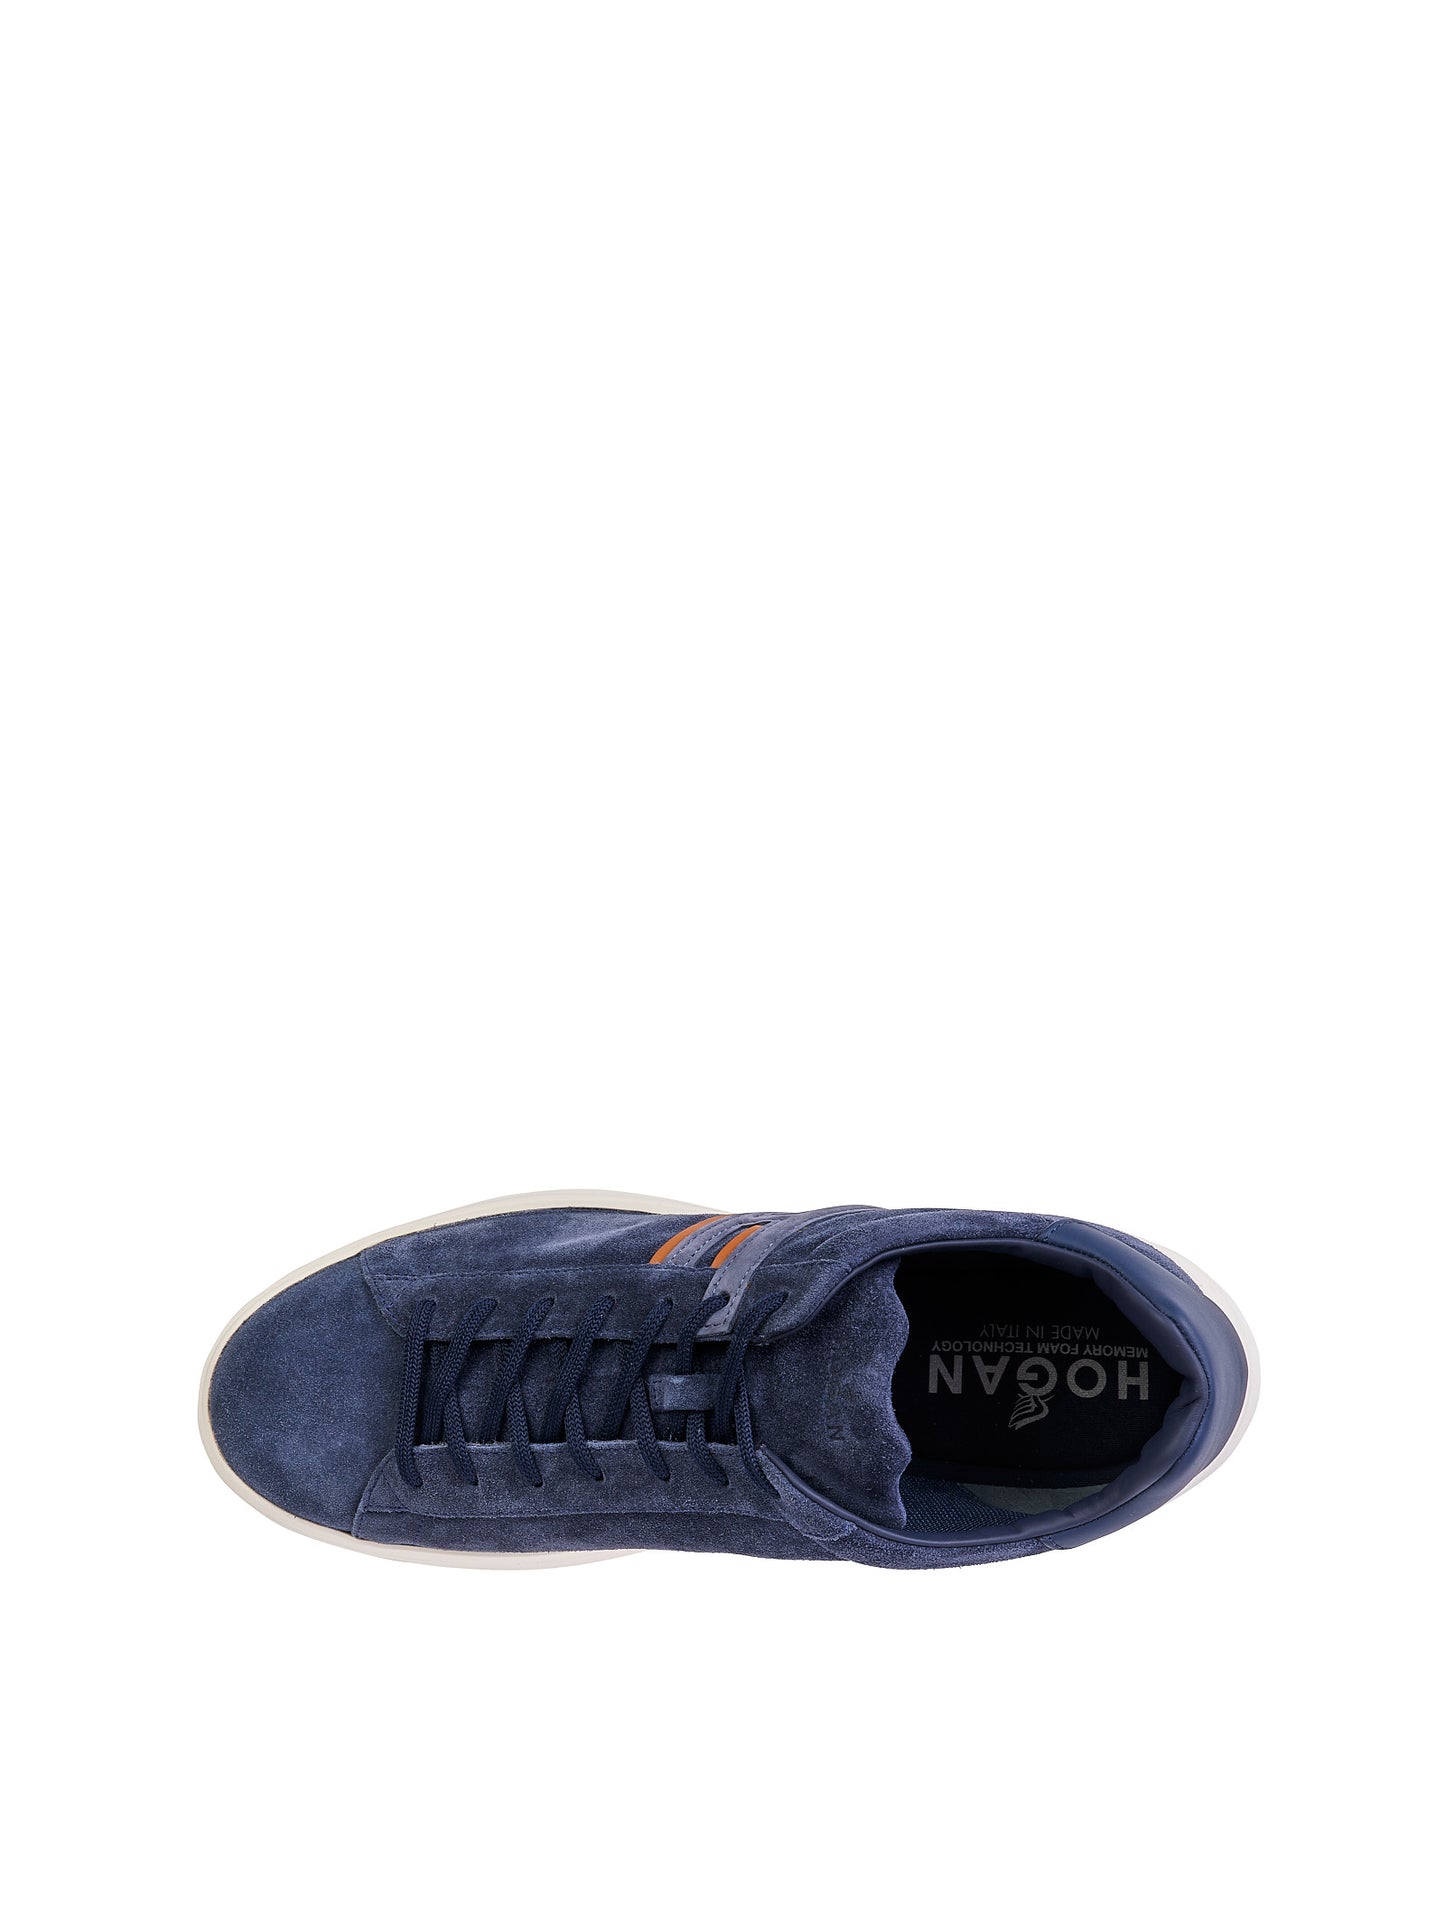 Sneaker HOGAN H580
Blu